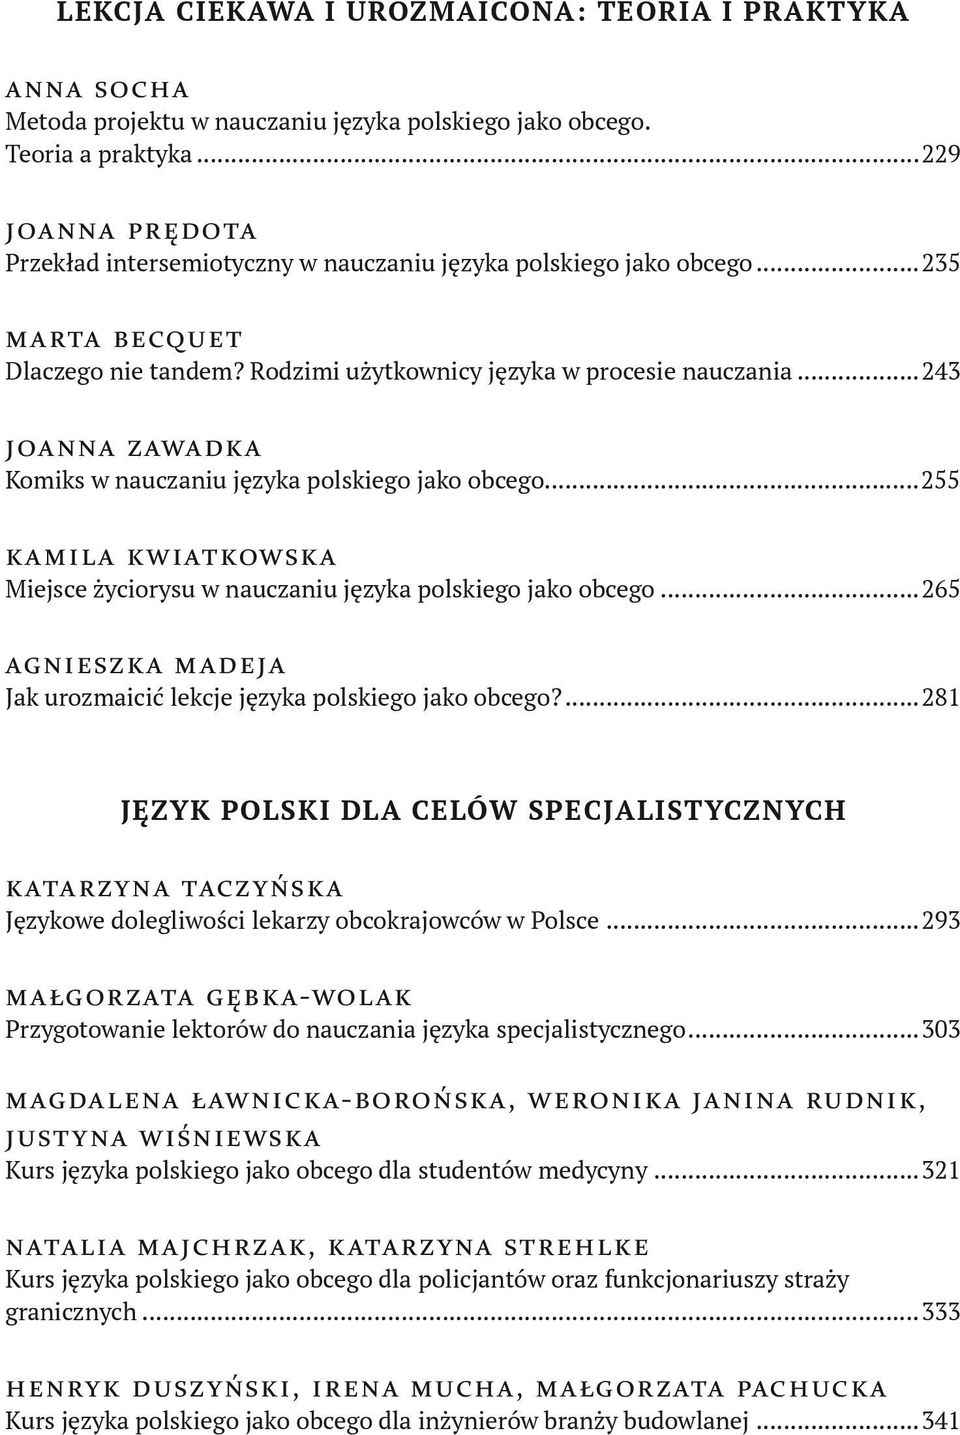 ..243 joanna zawadka Komiks w nauczaniu języka polskiego jako obcego...255 kamila kwiatkowska Miejsce życiorysu w nauczaniu języka polskiego jako obcego.